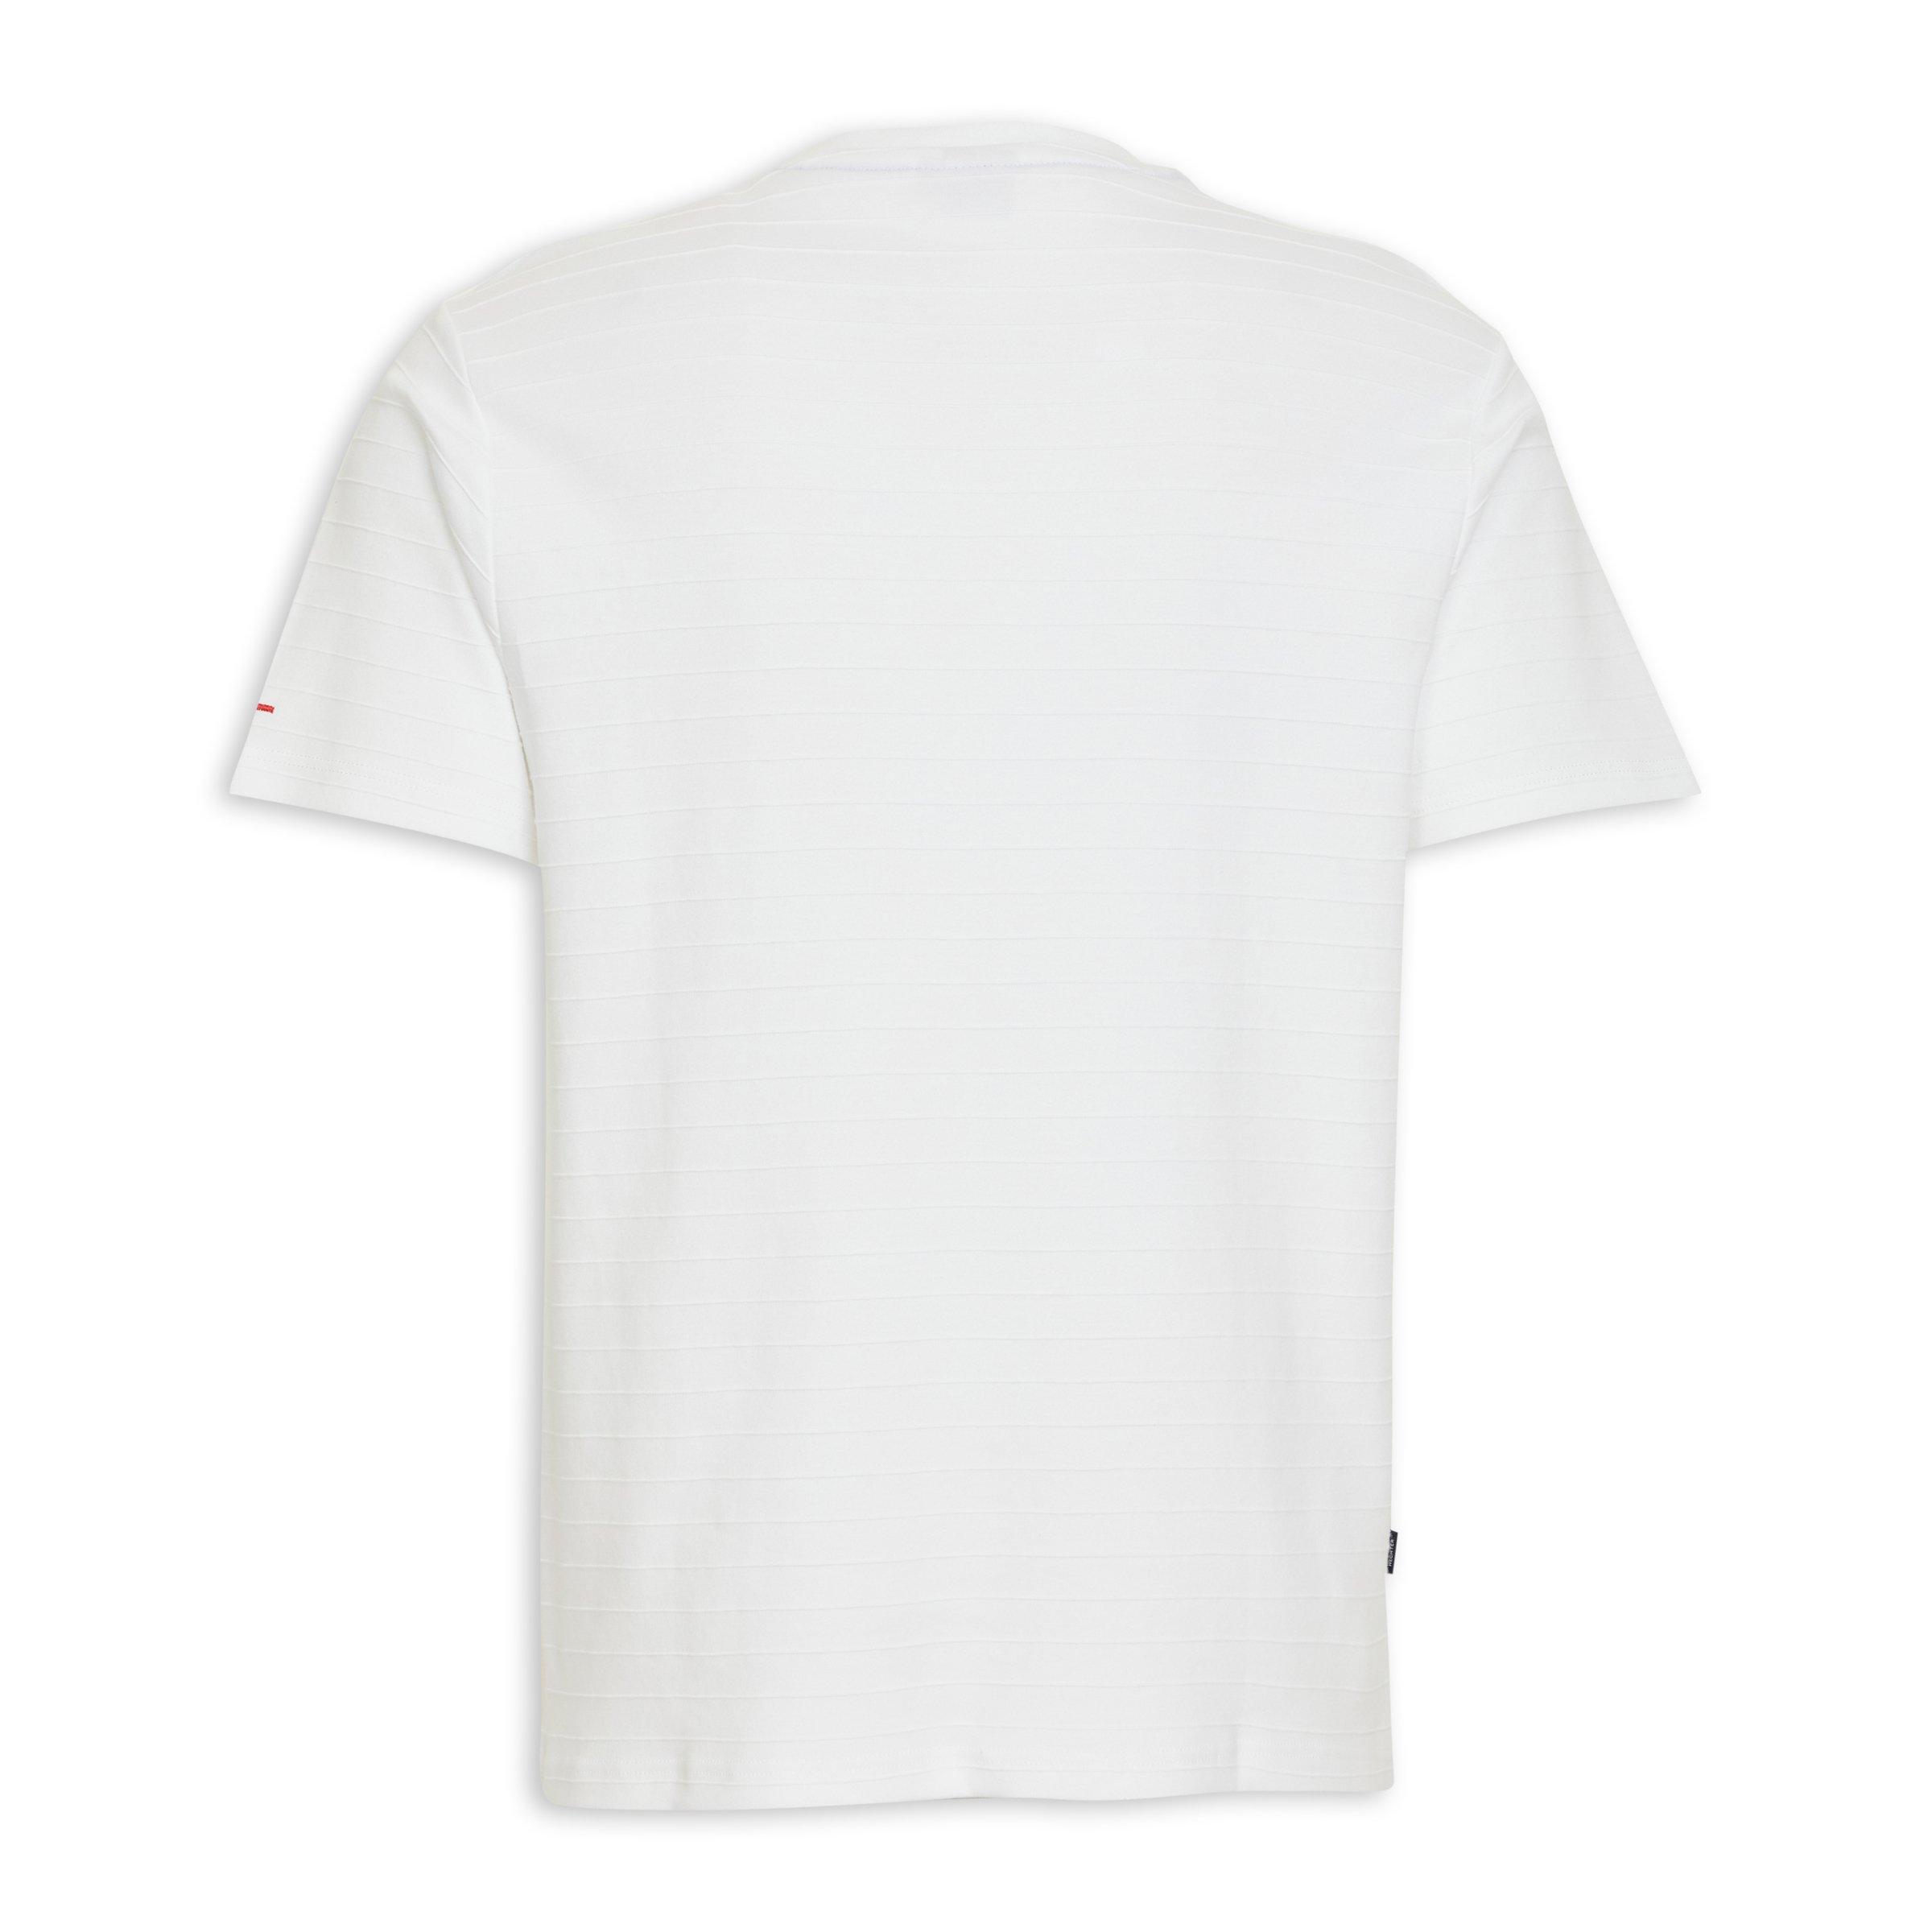 Plain White T-Shirt (3120065)